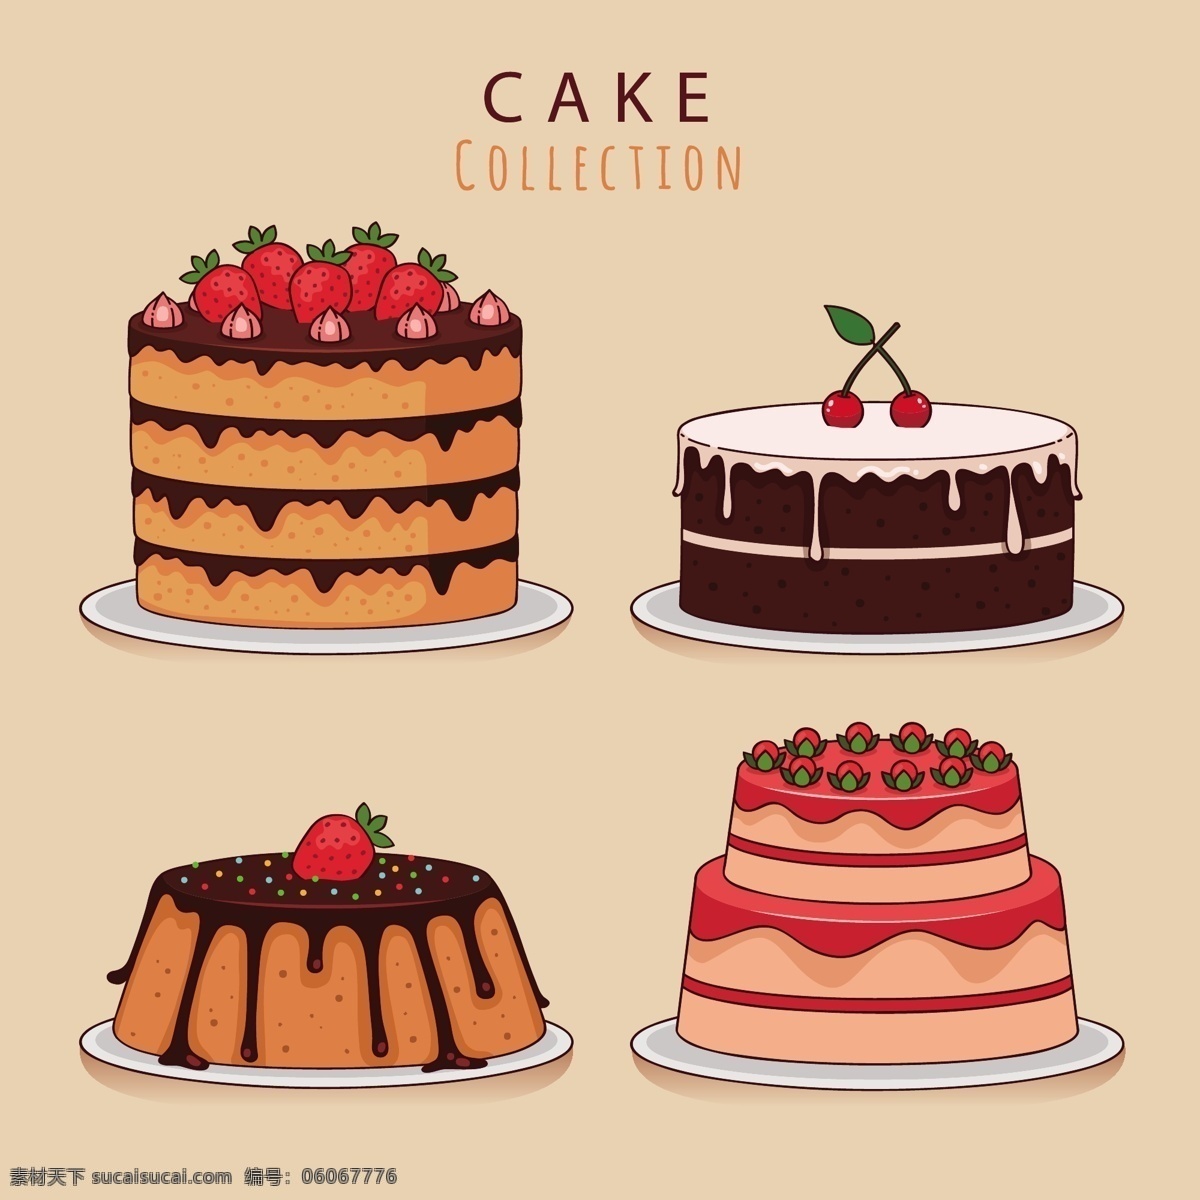 手绘蛋糕 生日蛋糕 爱心蛋糕 蛋糕diy 手绘 甜点 蛋糕 食品 西式蛋糕 烘培蛋糕 卡通蛋糕 糕点 矢量插画 生活百科 餐饮美食